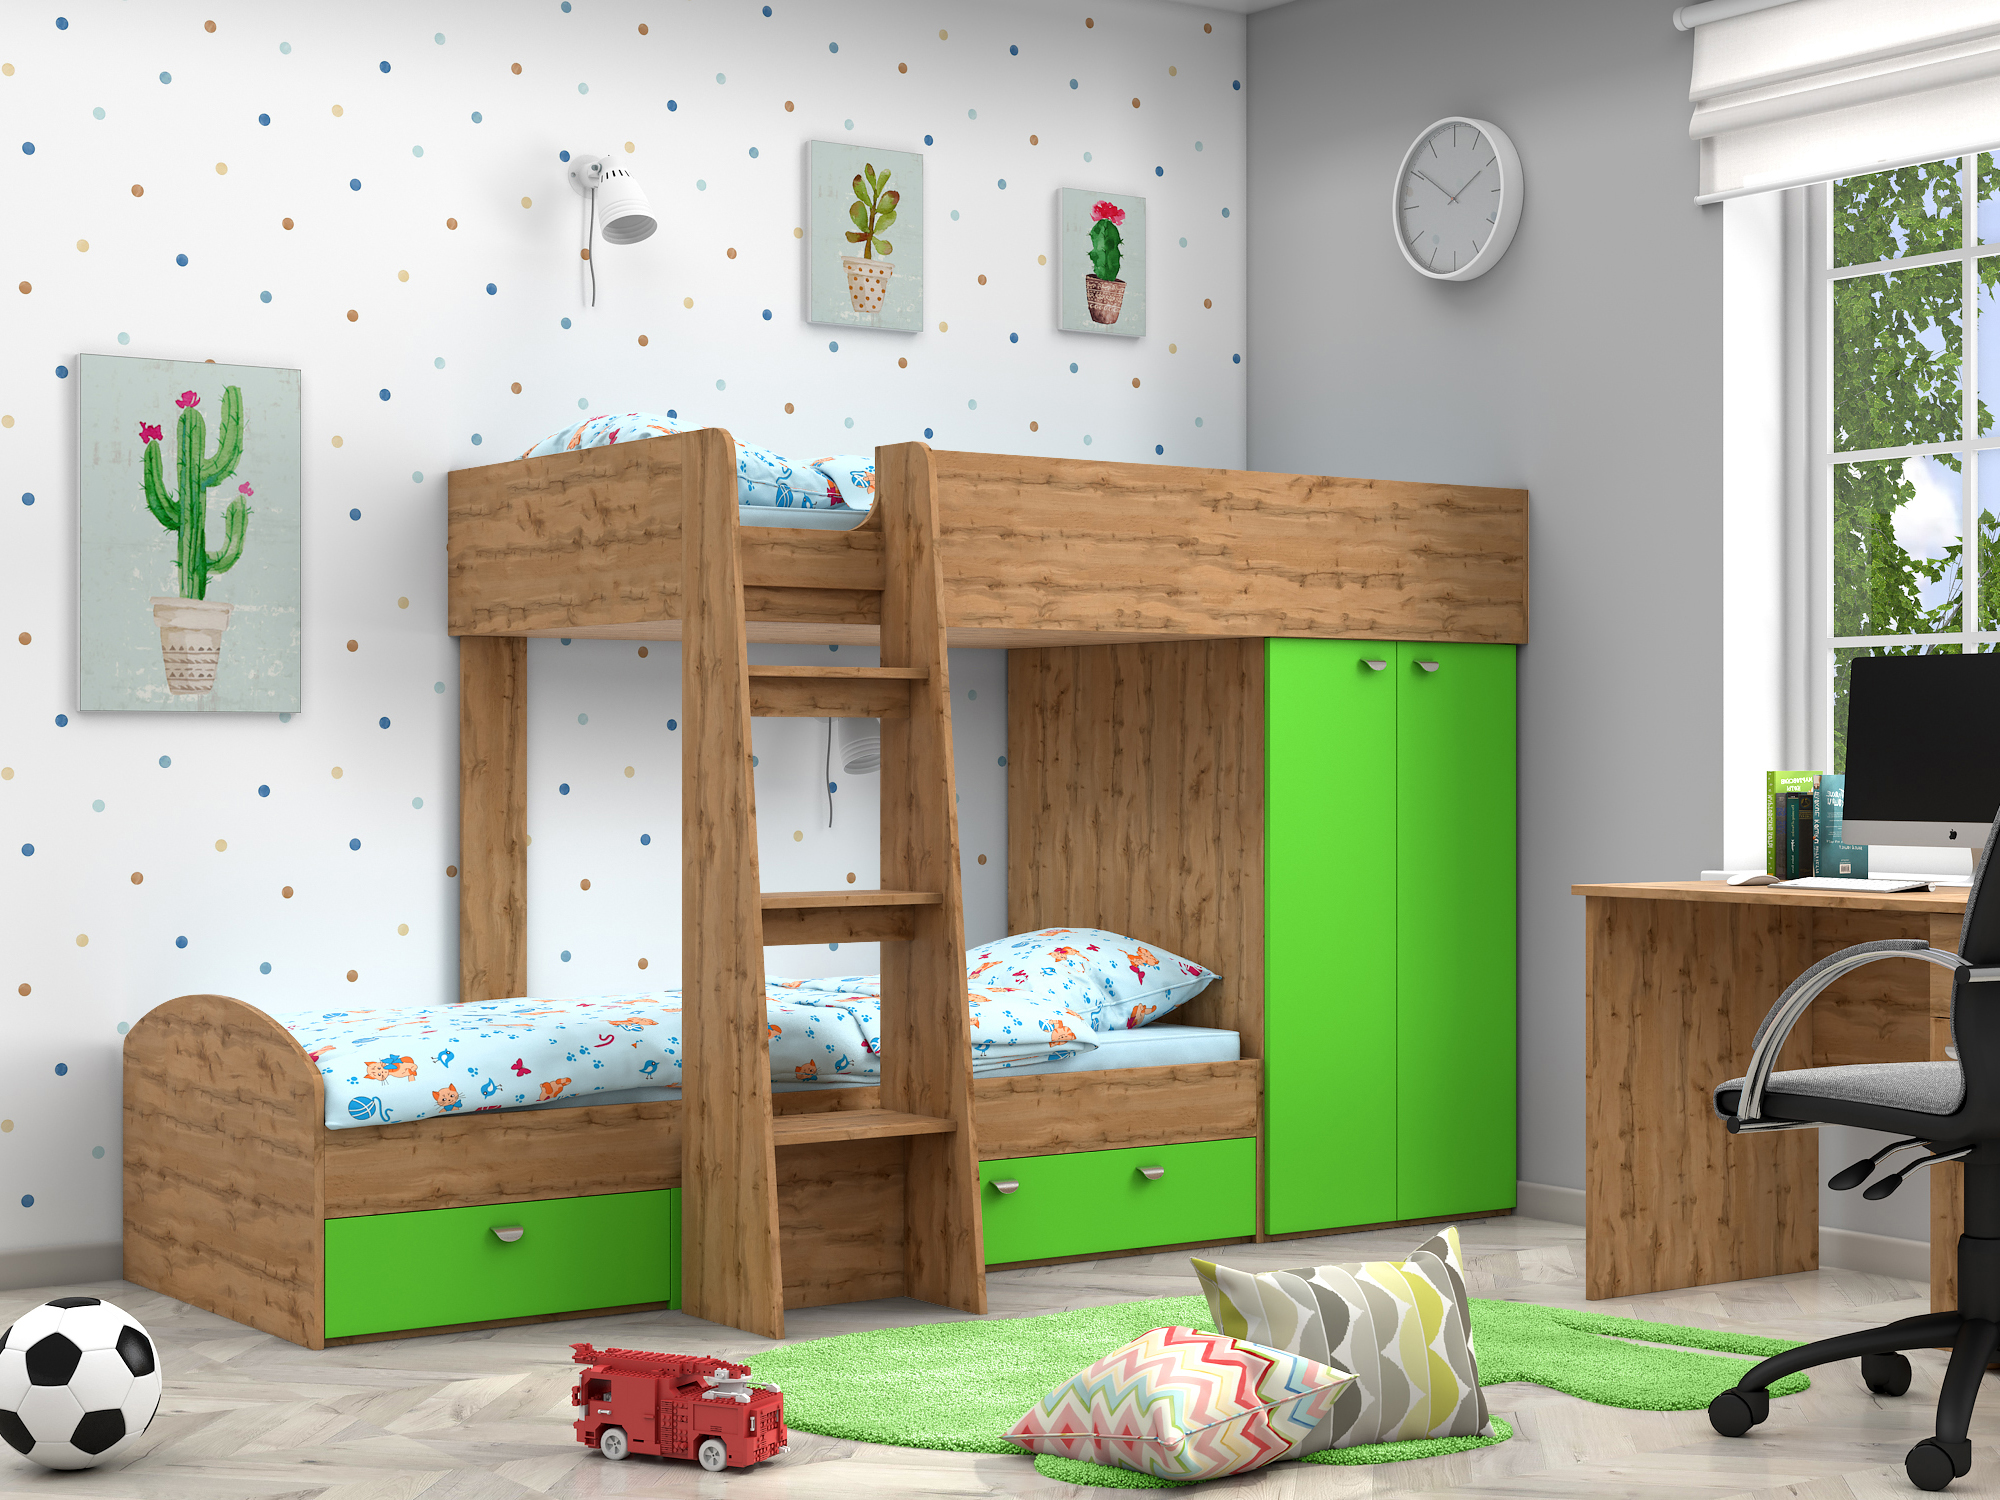 Двухъярусная кровать Golden Kids-2 (90х200) Зеленый, Бежевый, ЛДСП двухъярусная кровать golden kids 2 90х200 венге коричневый темный белый бежевый лдсп